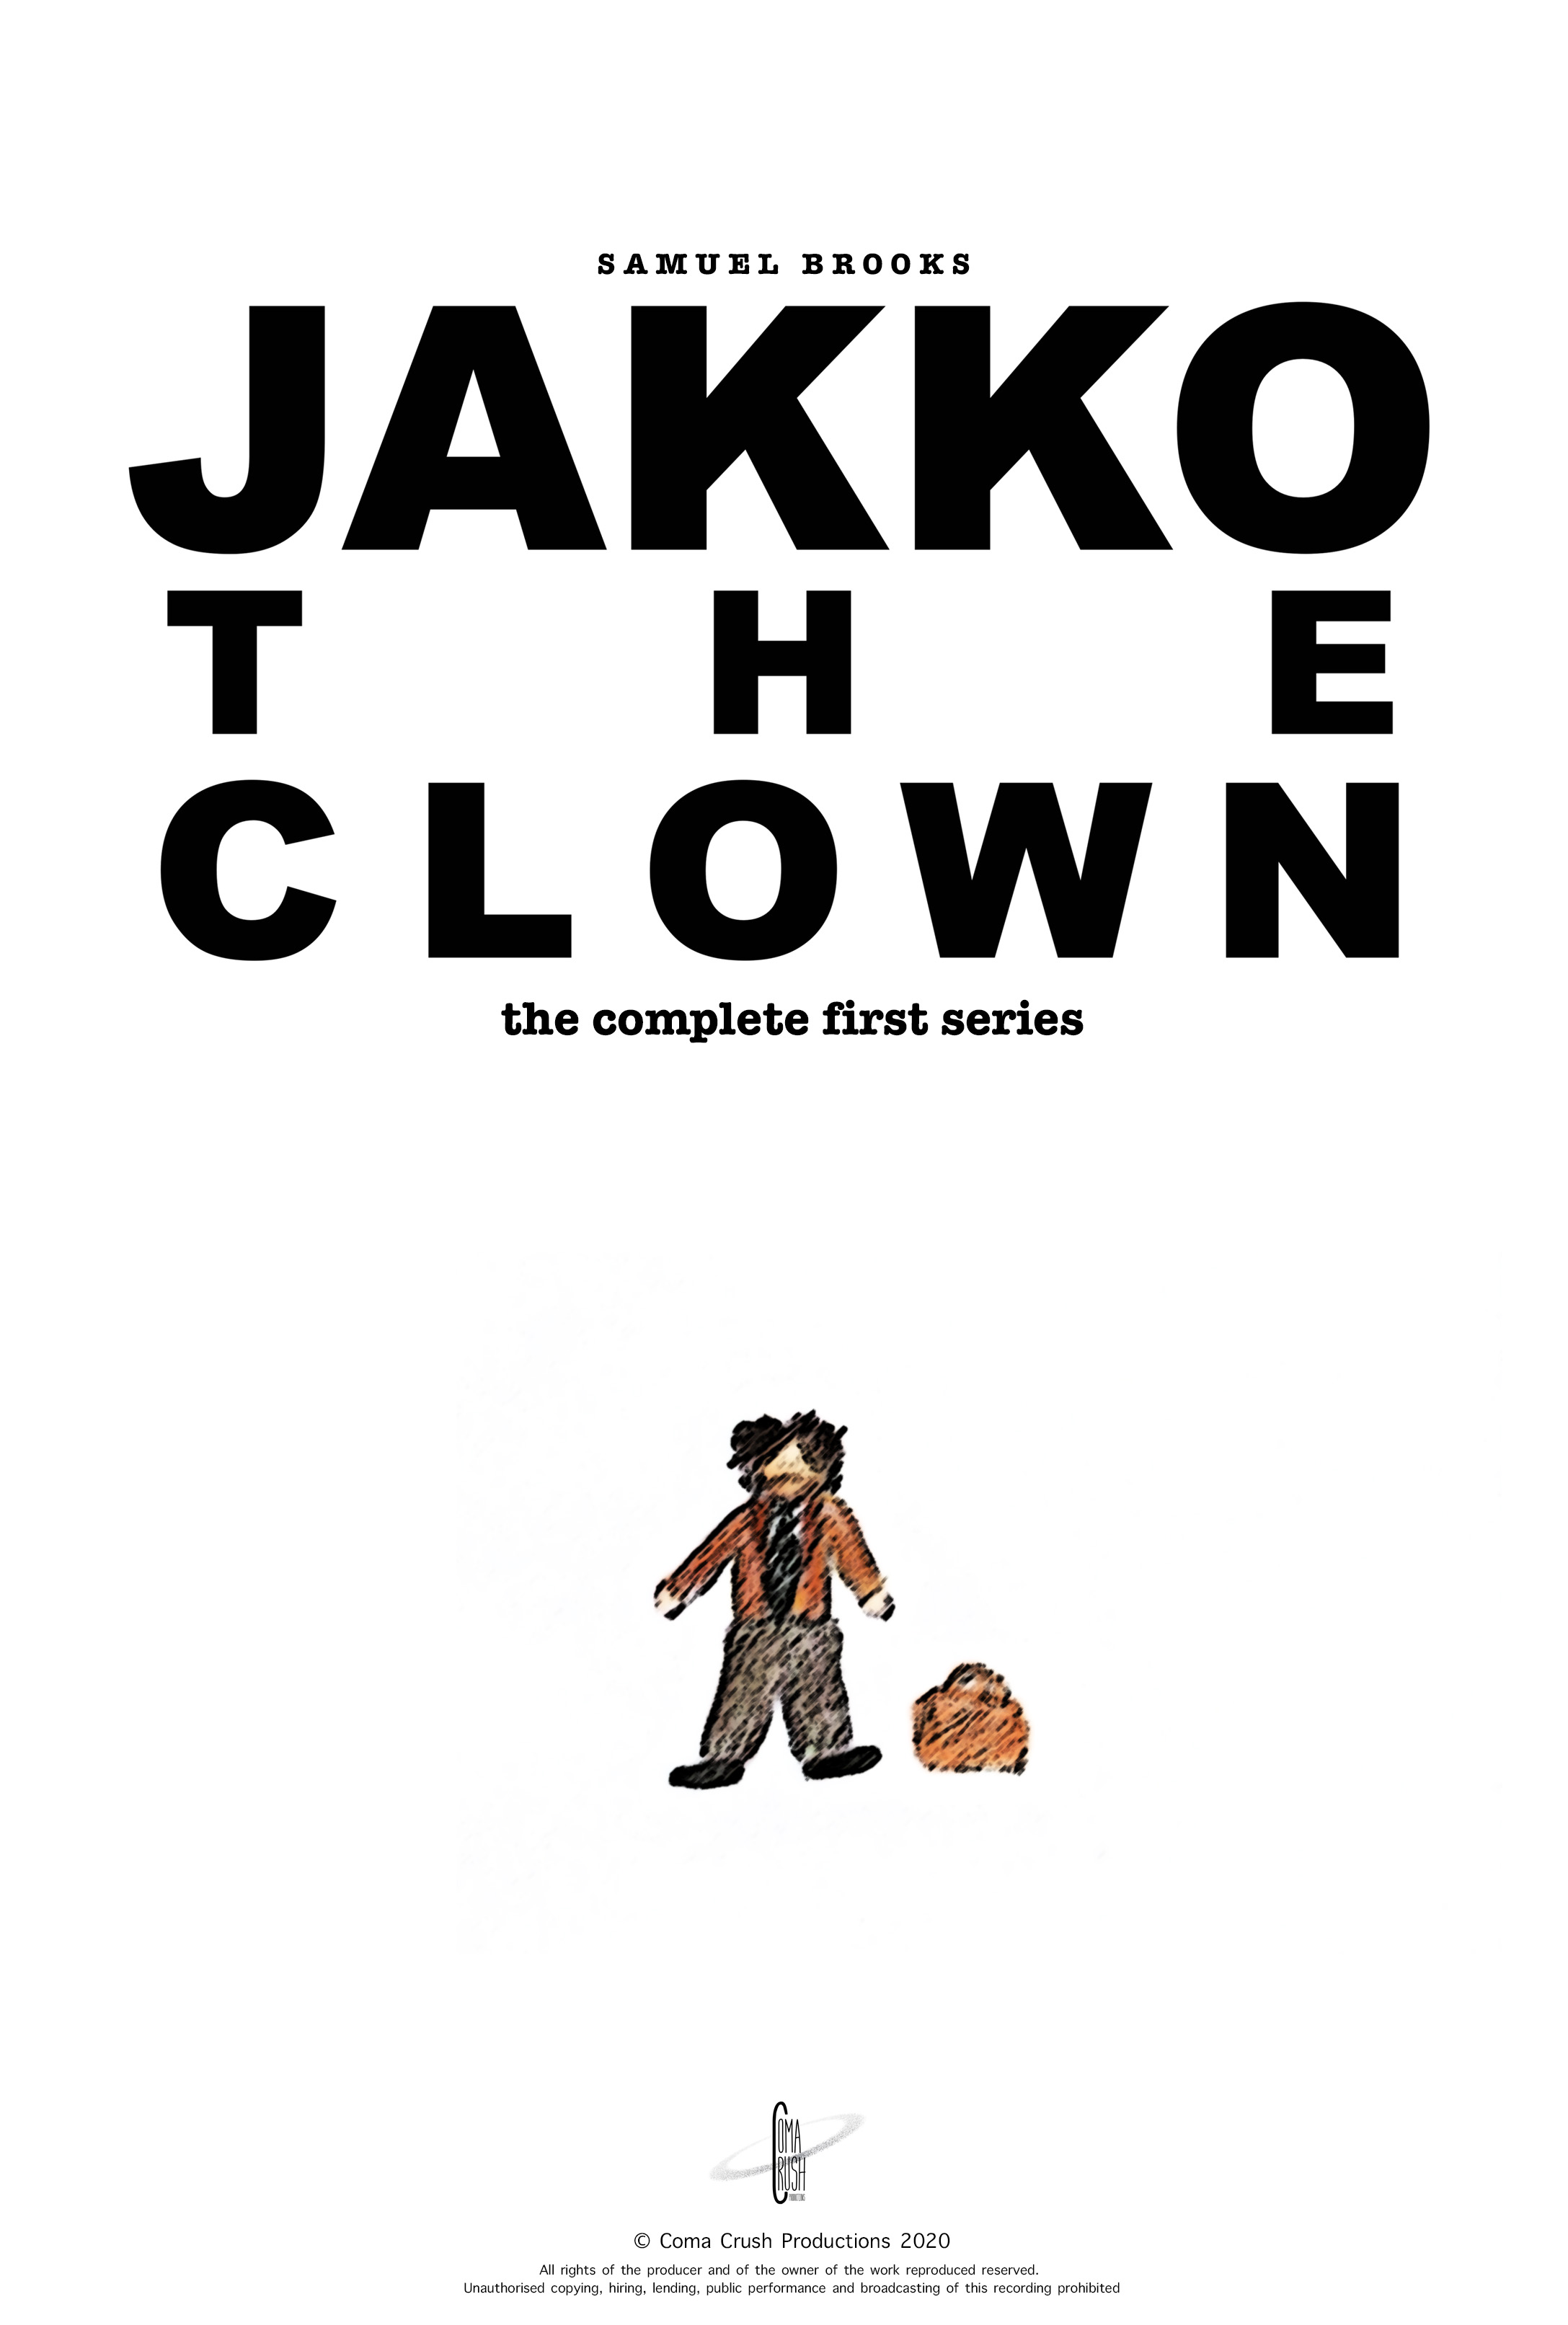 Jakko the Clown